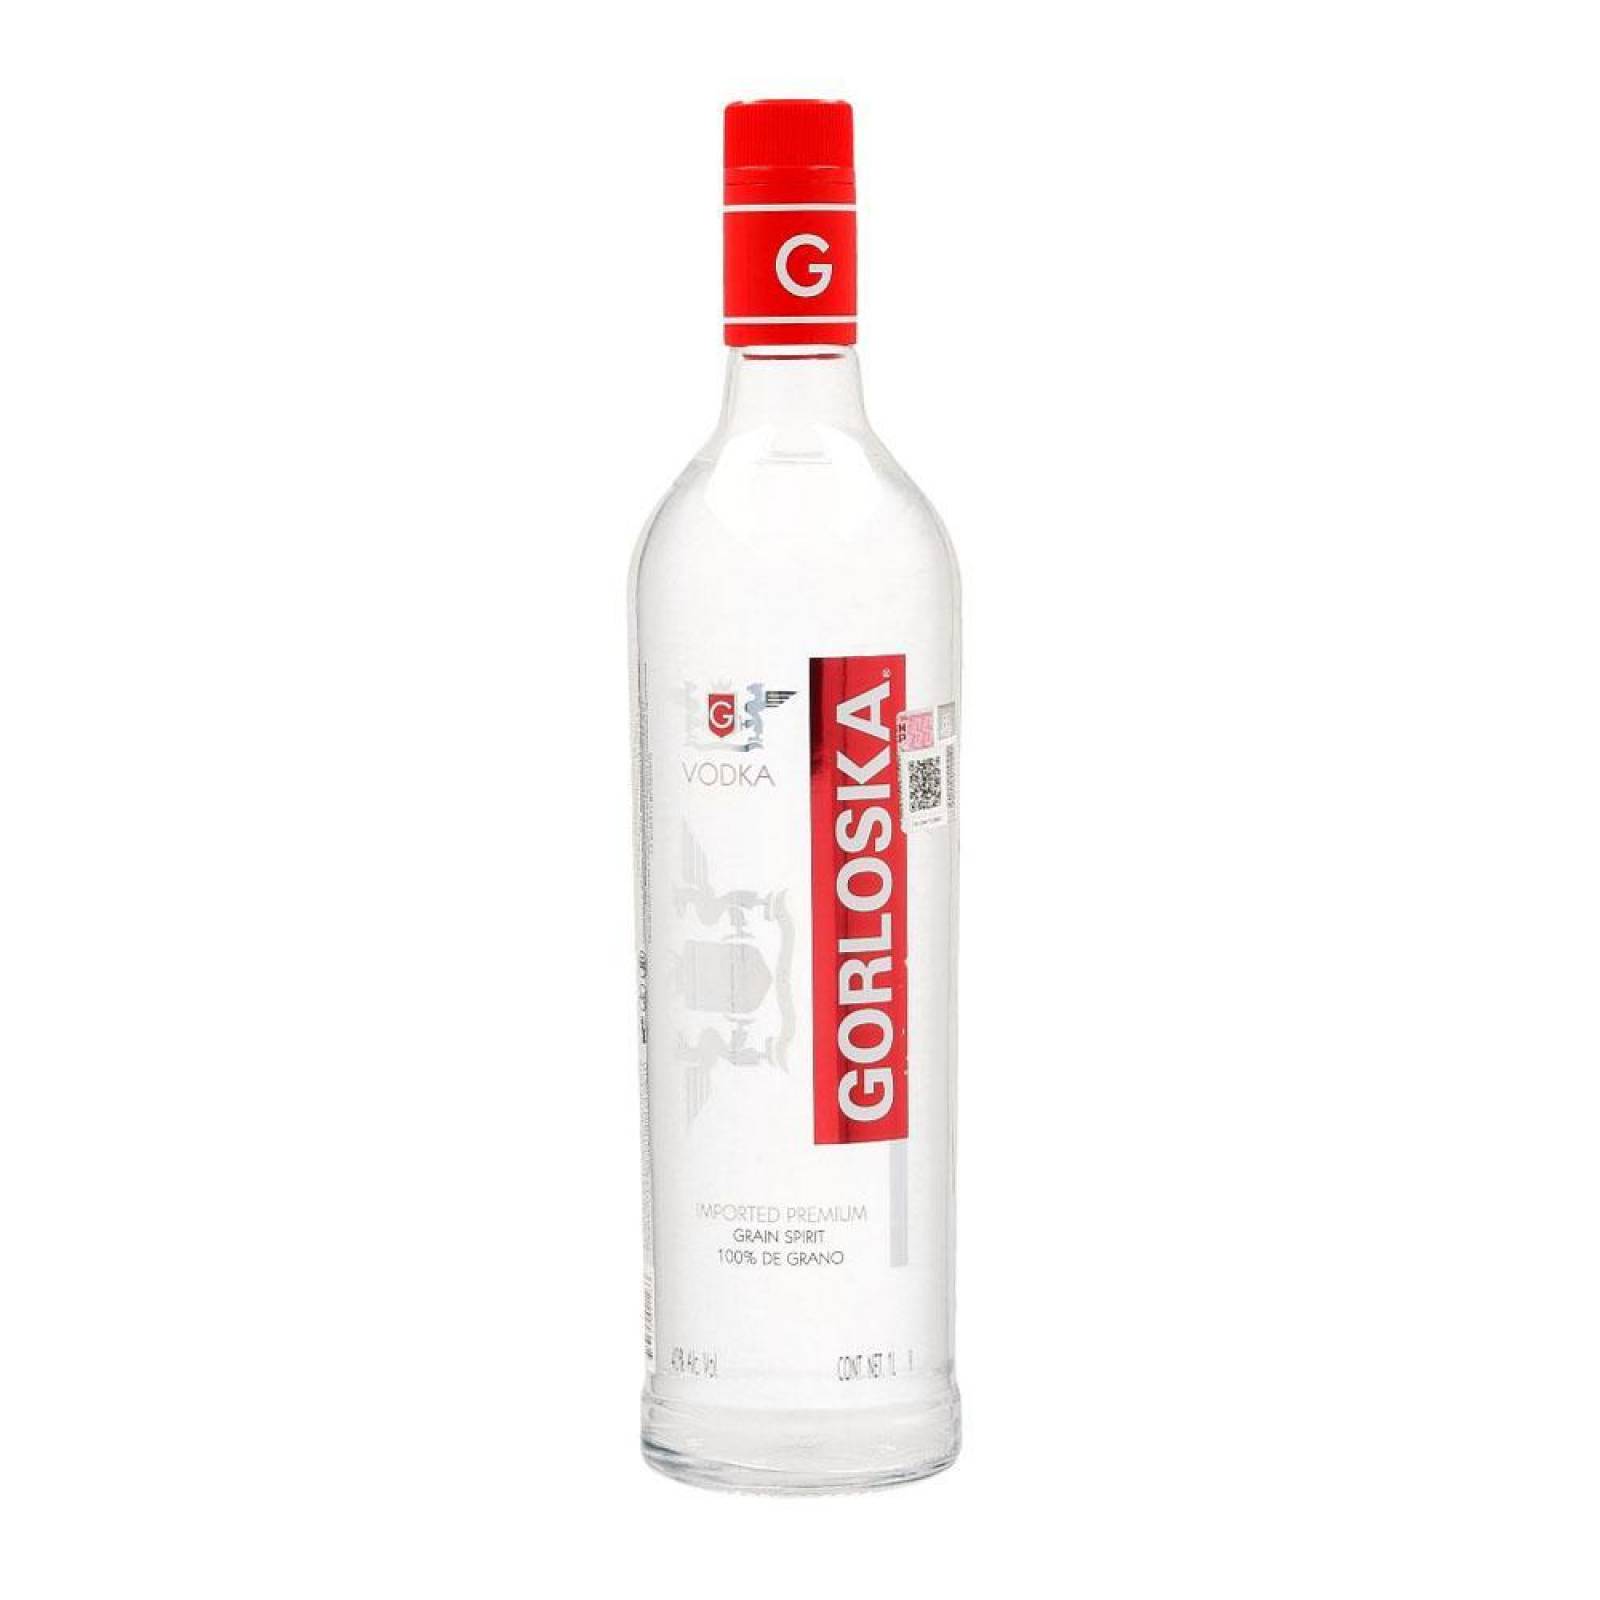 Vodka Gorloska 1 L 